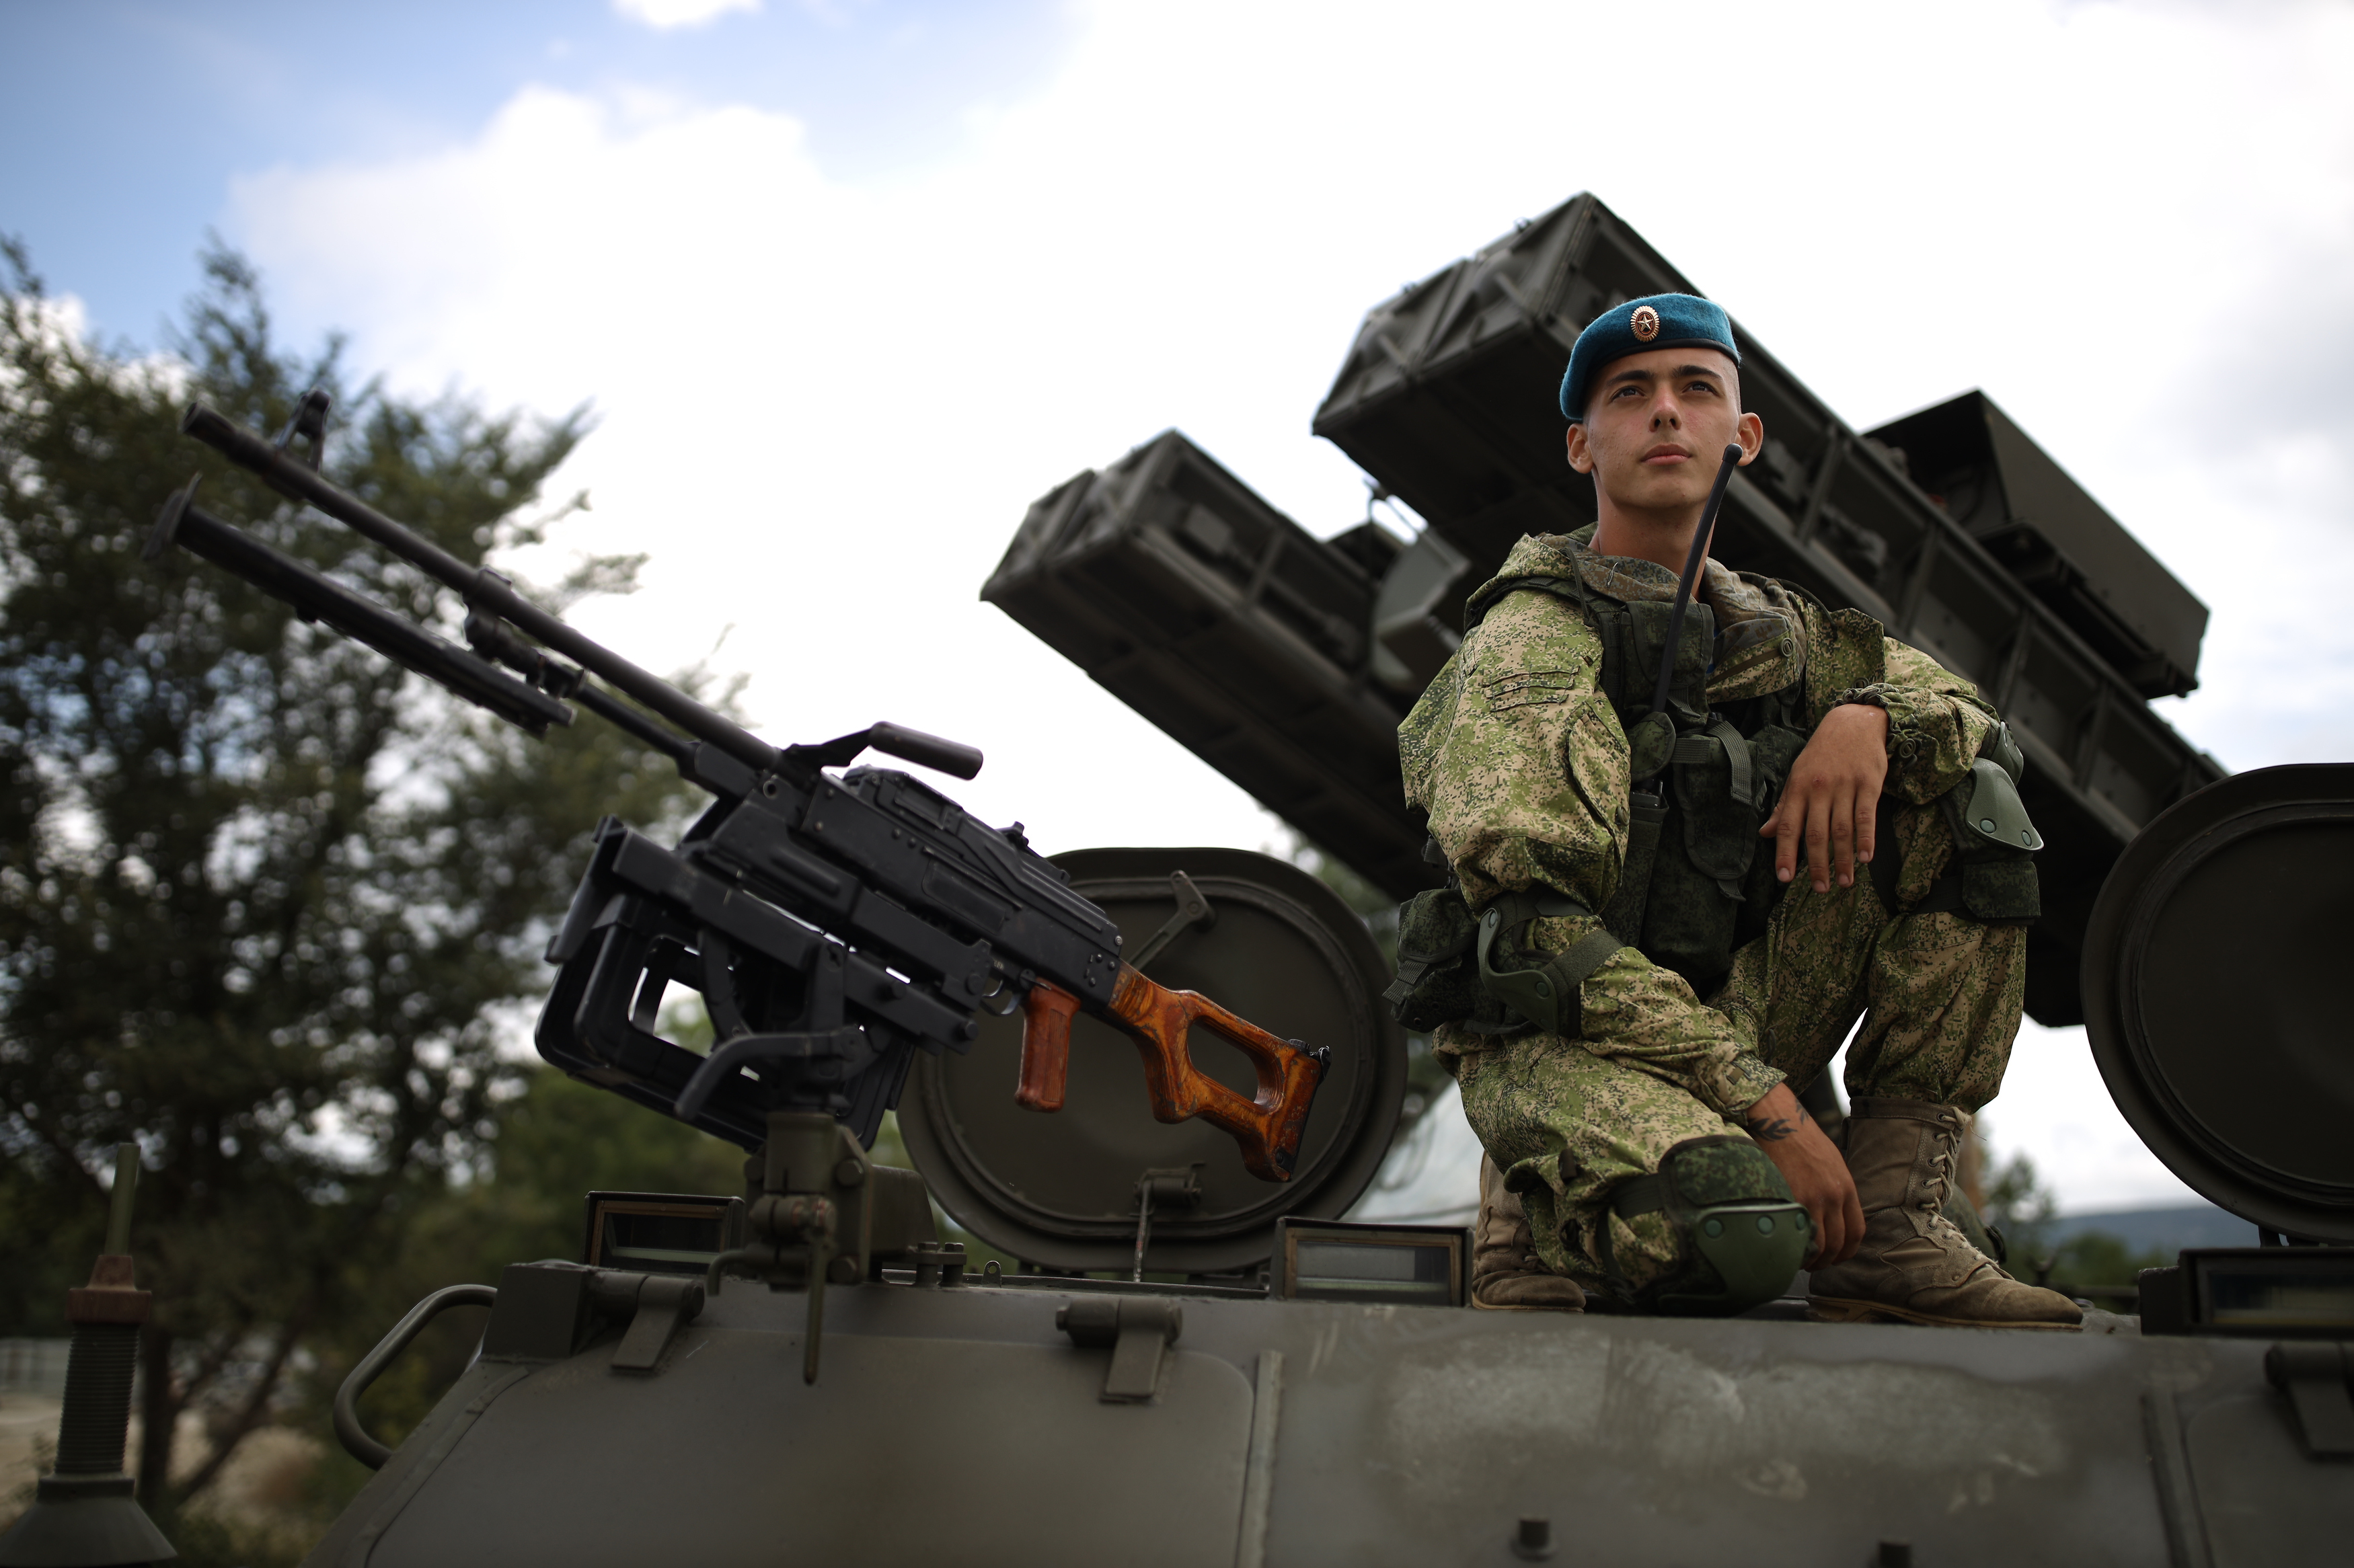 Военнослужащие в голубых беретах и тельняшка неизменно славятся своим мужеством. Фото: Виталий ТИМКИВ.